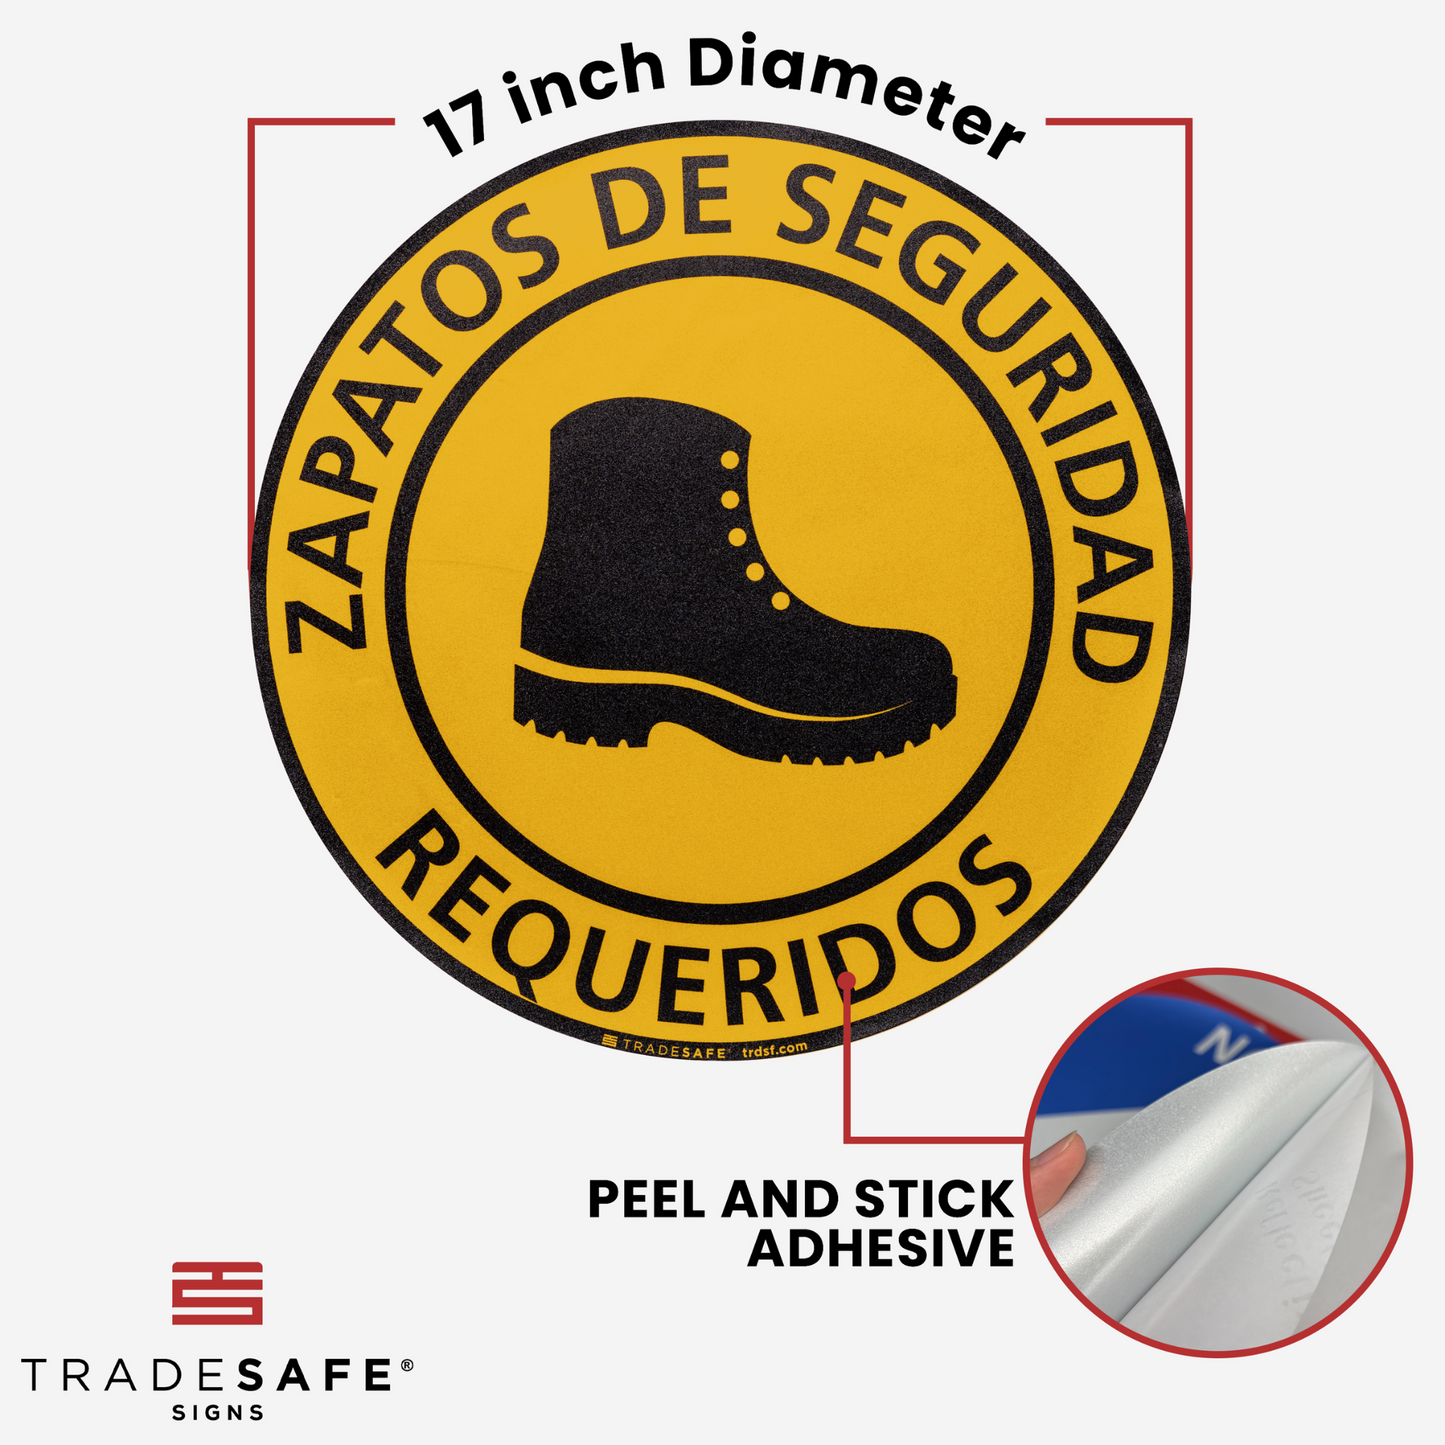 dimensions of "zapatos de seguridad requeridos" sign